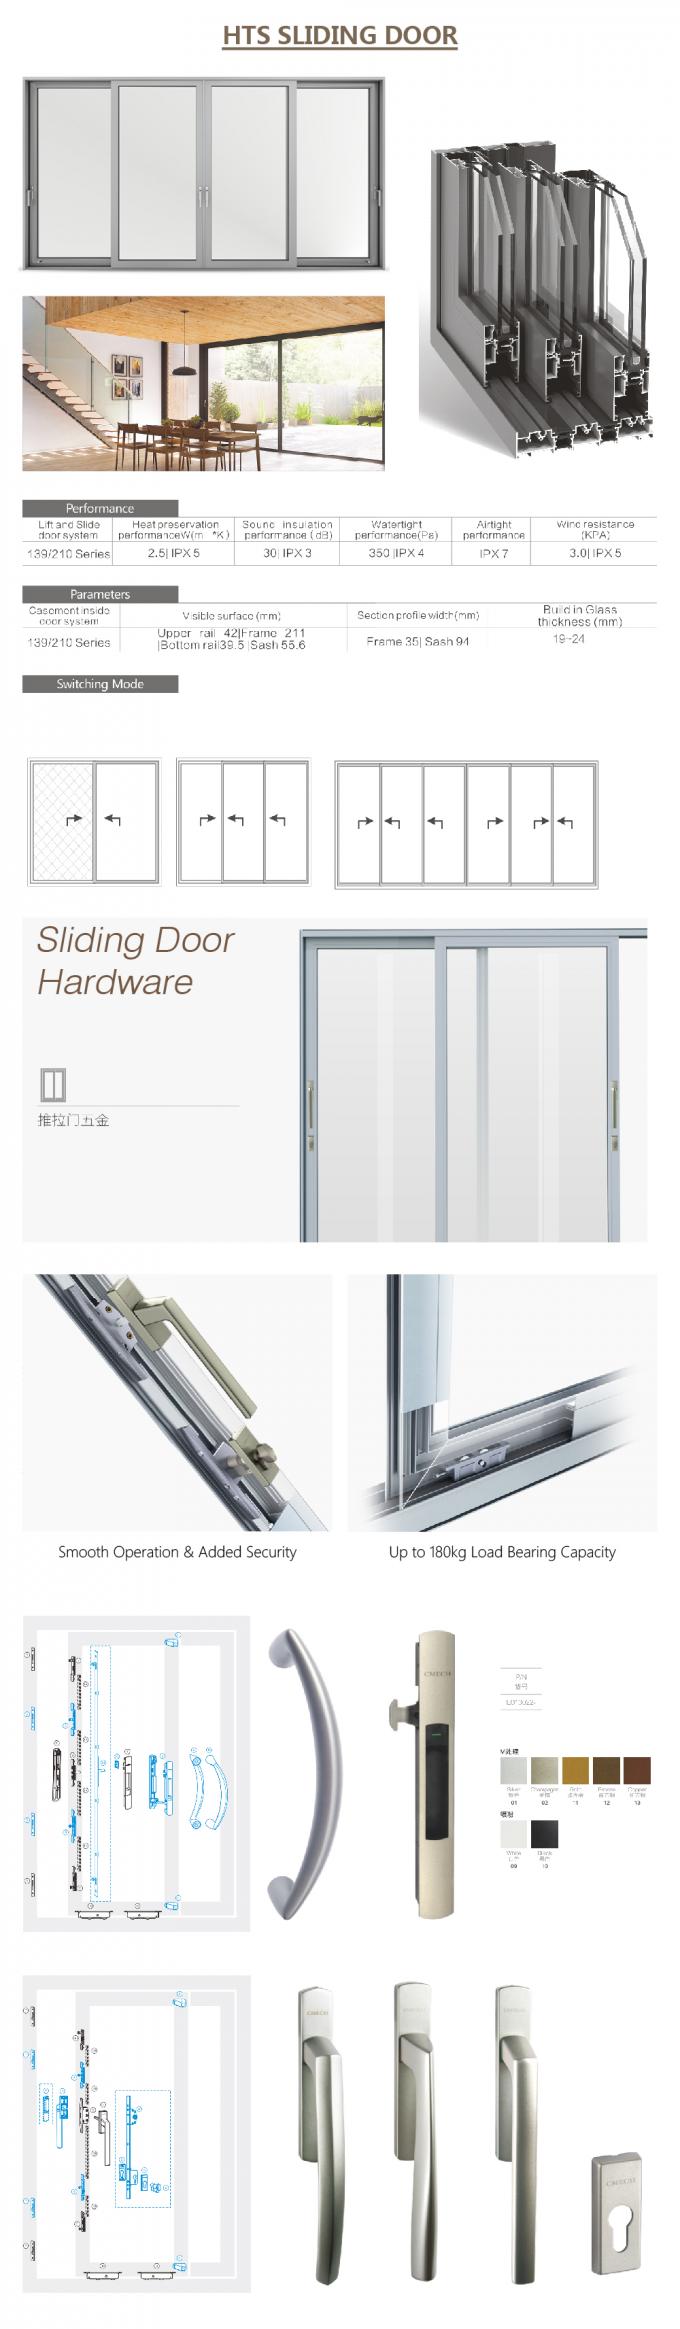 китайская раздвижная дверь, алюминиевый профиль для сползая стеклянной двери, автоматической двери сползая, стеклянной алюминиевой раздвижной двери, алюминиевых деталей раздвижной двери